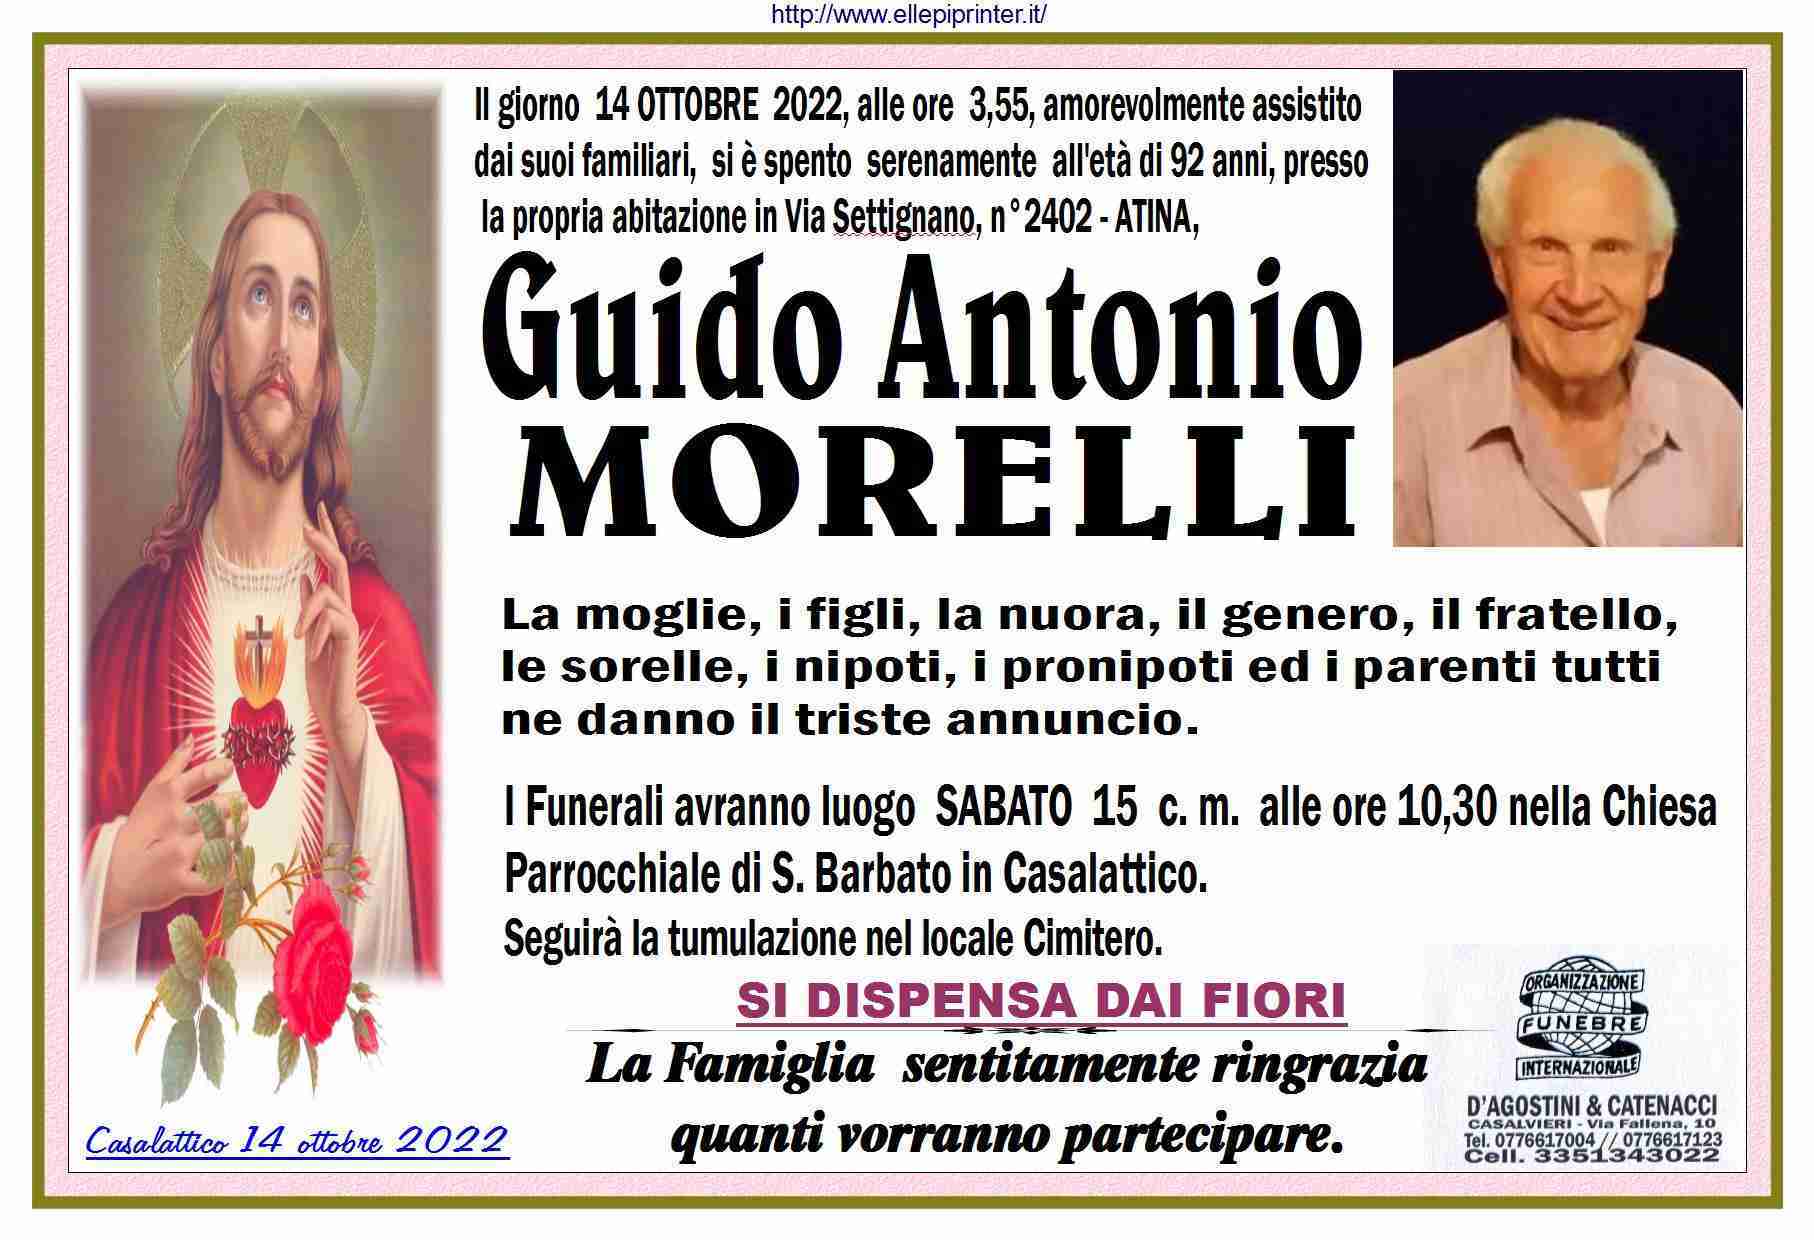 Guido Antonio Morelli